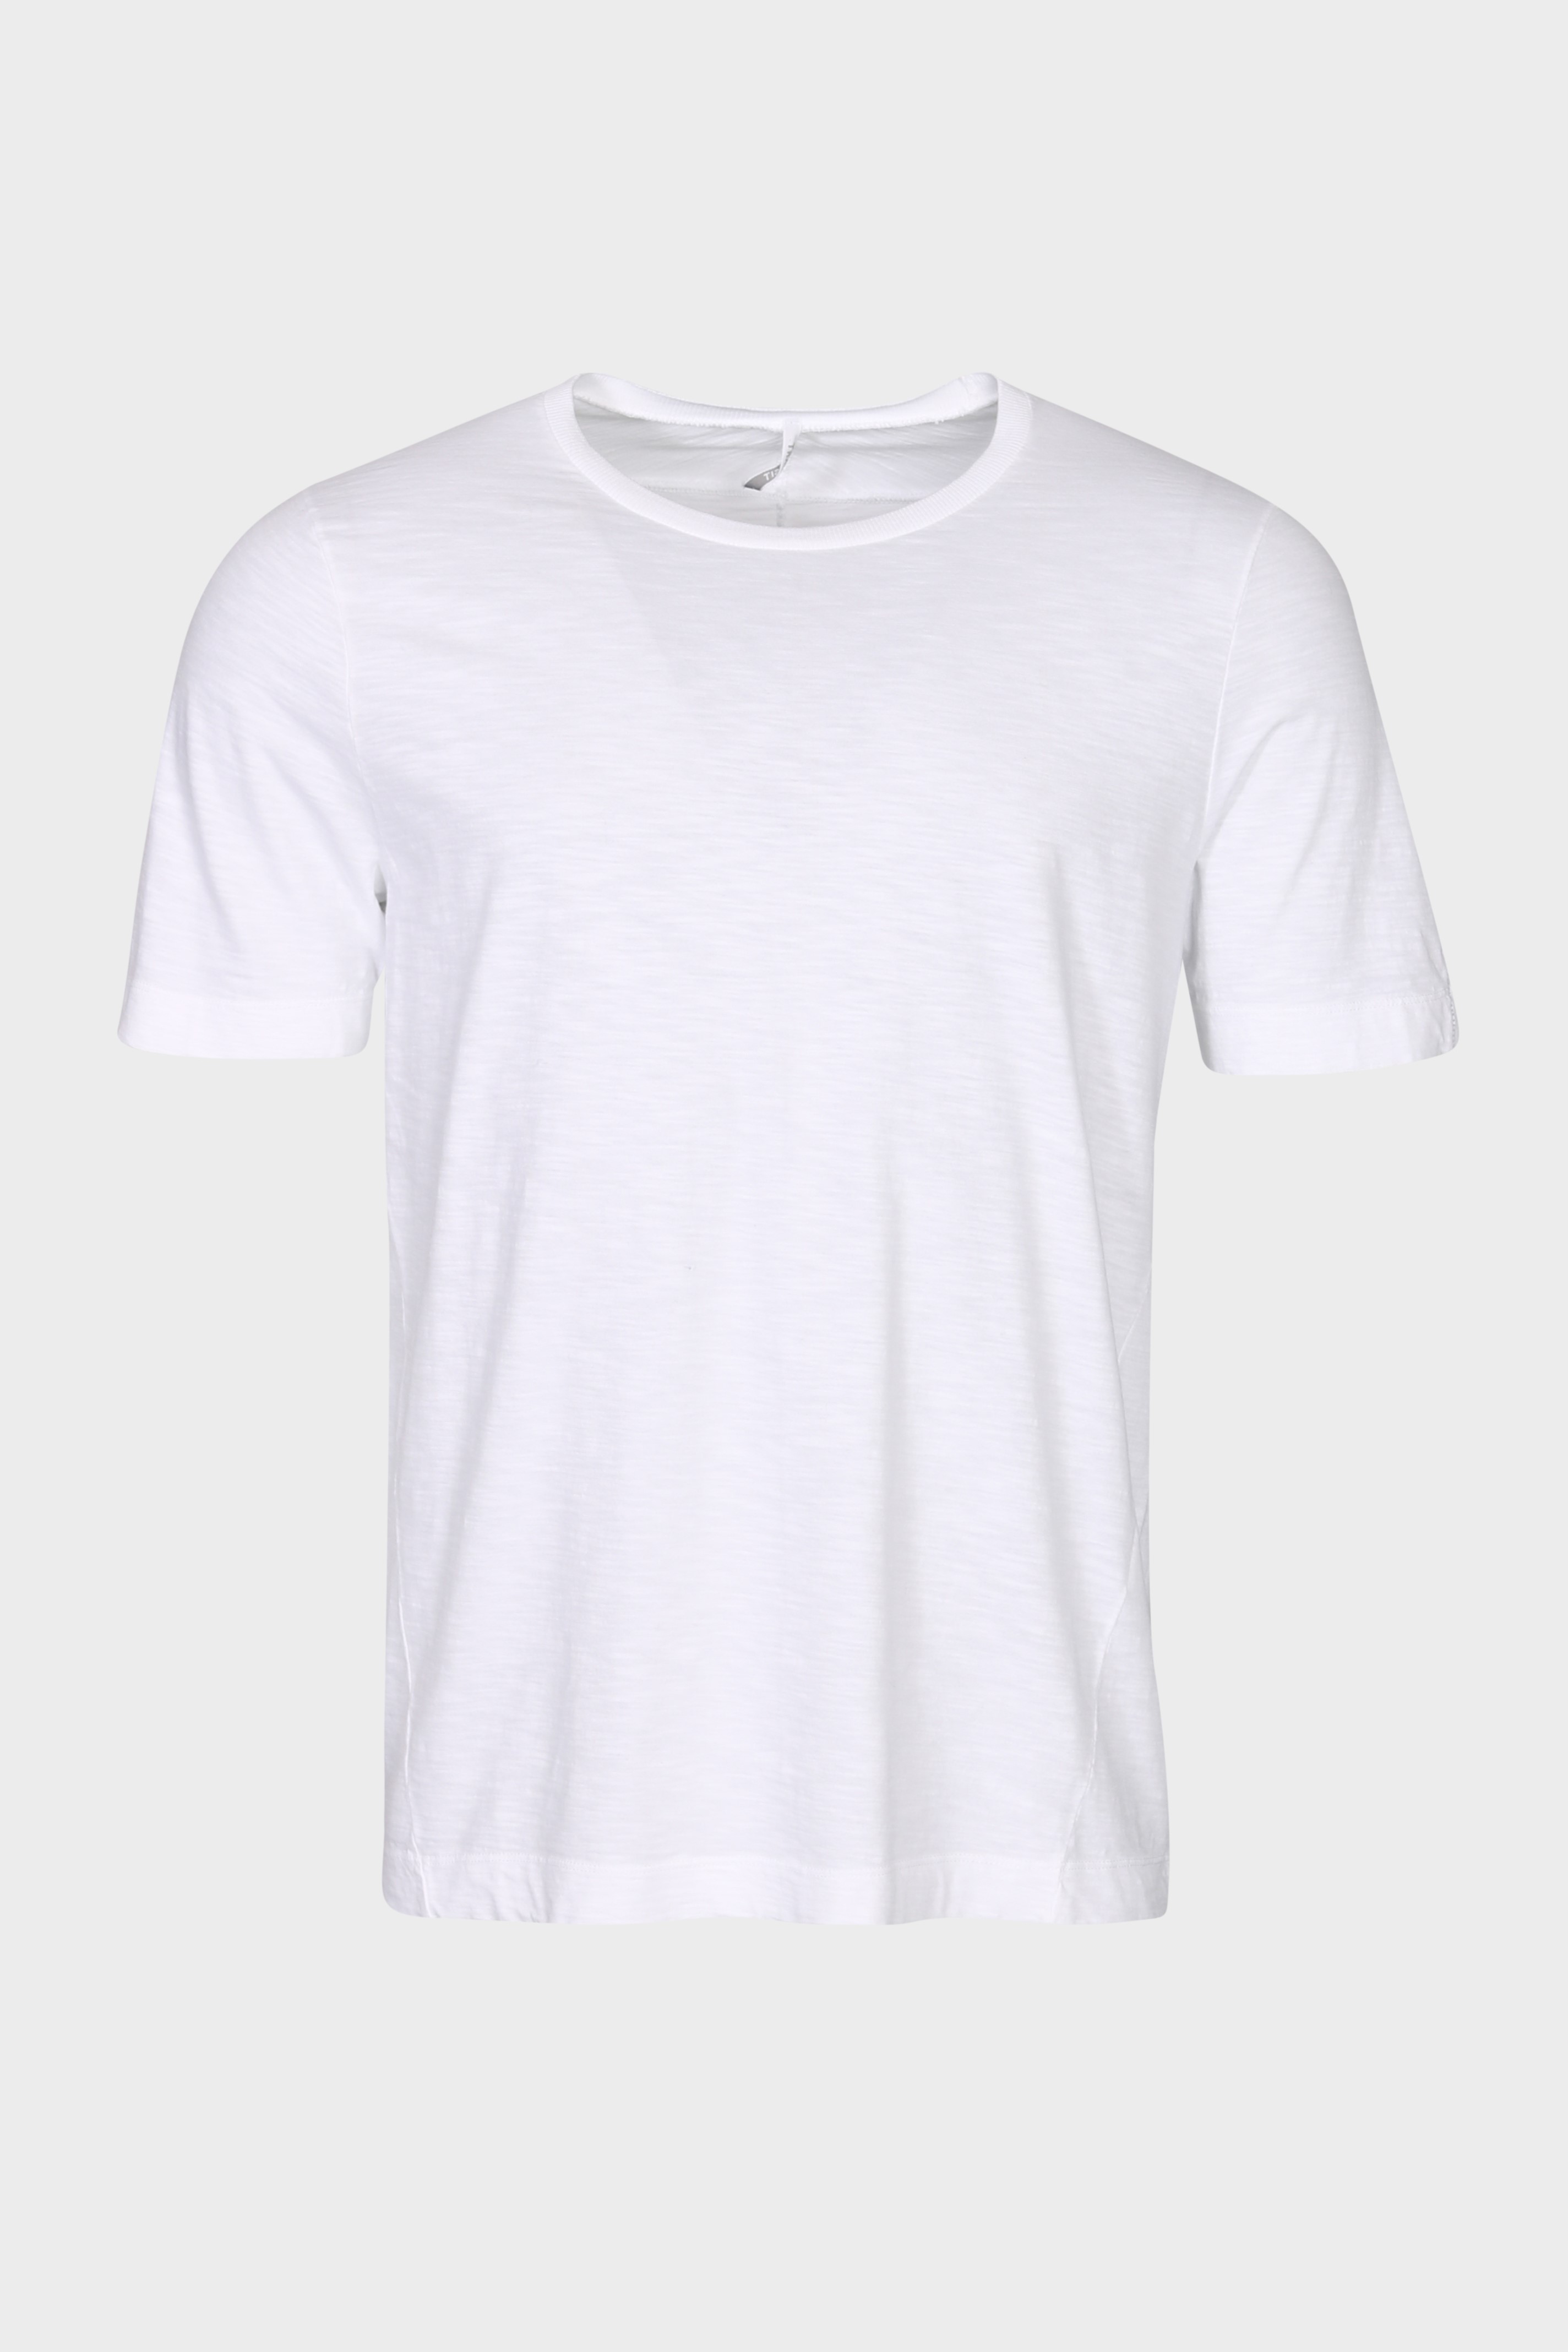 TRANSIT UOMO Cotton T-Shirt in White